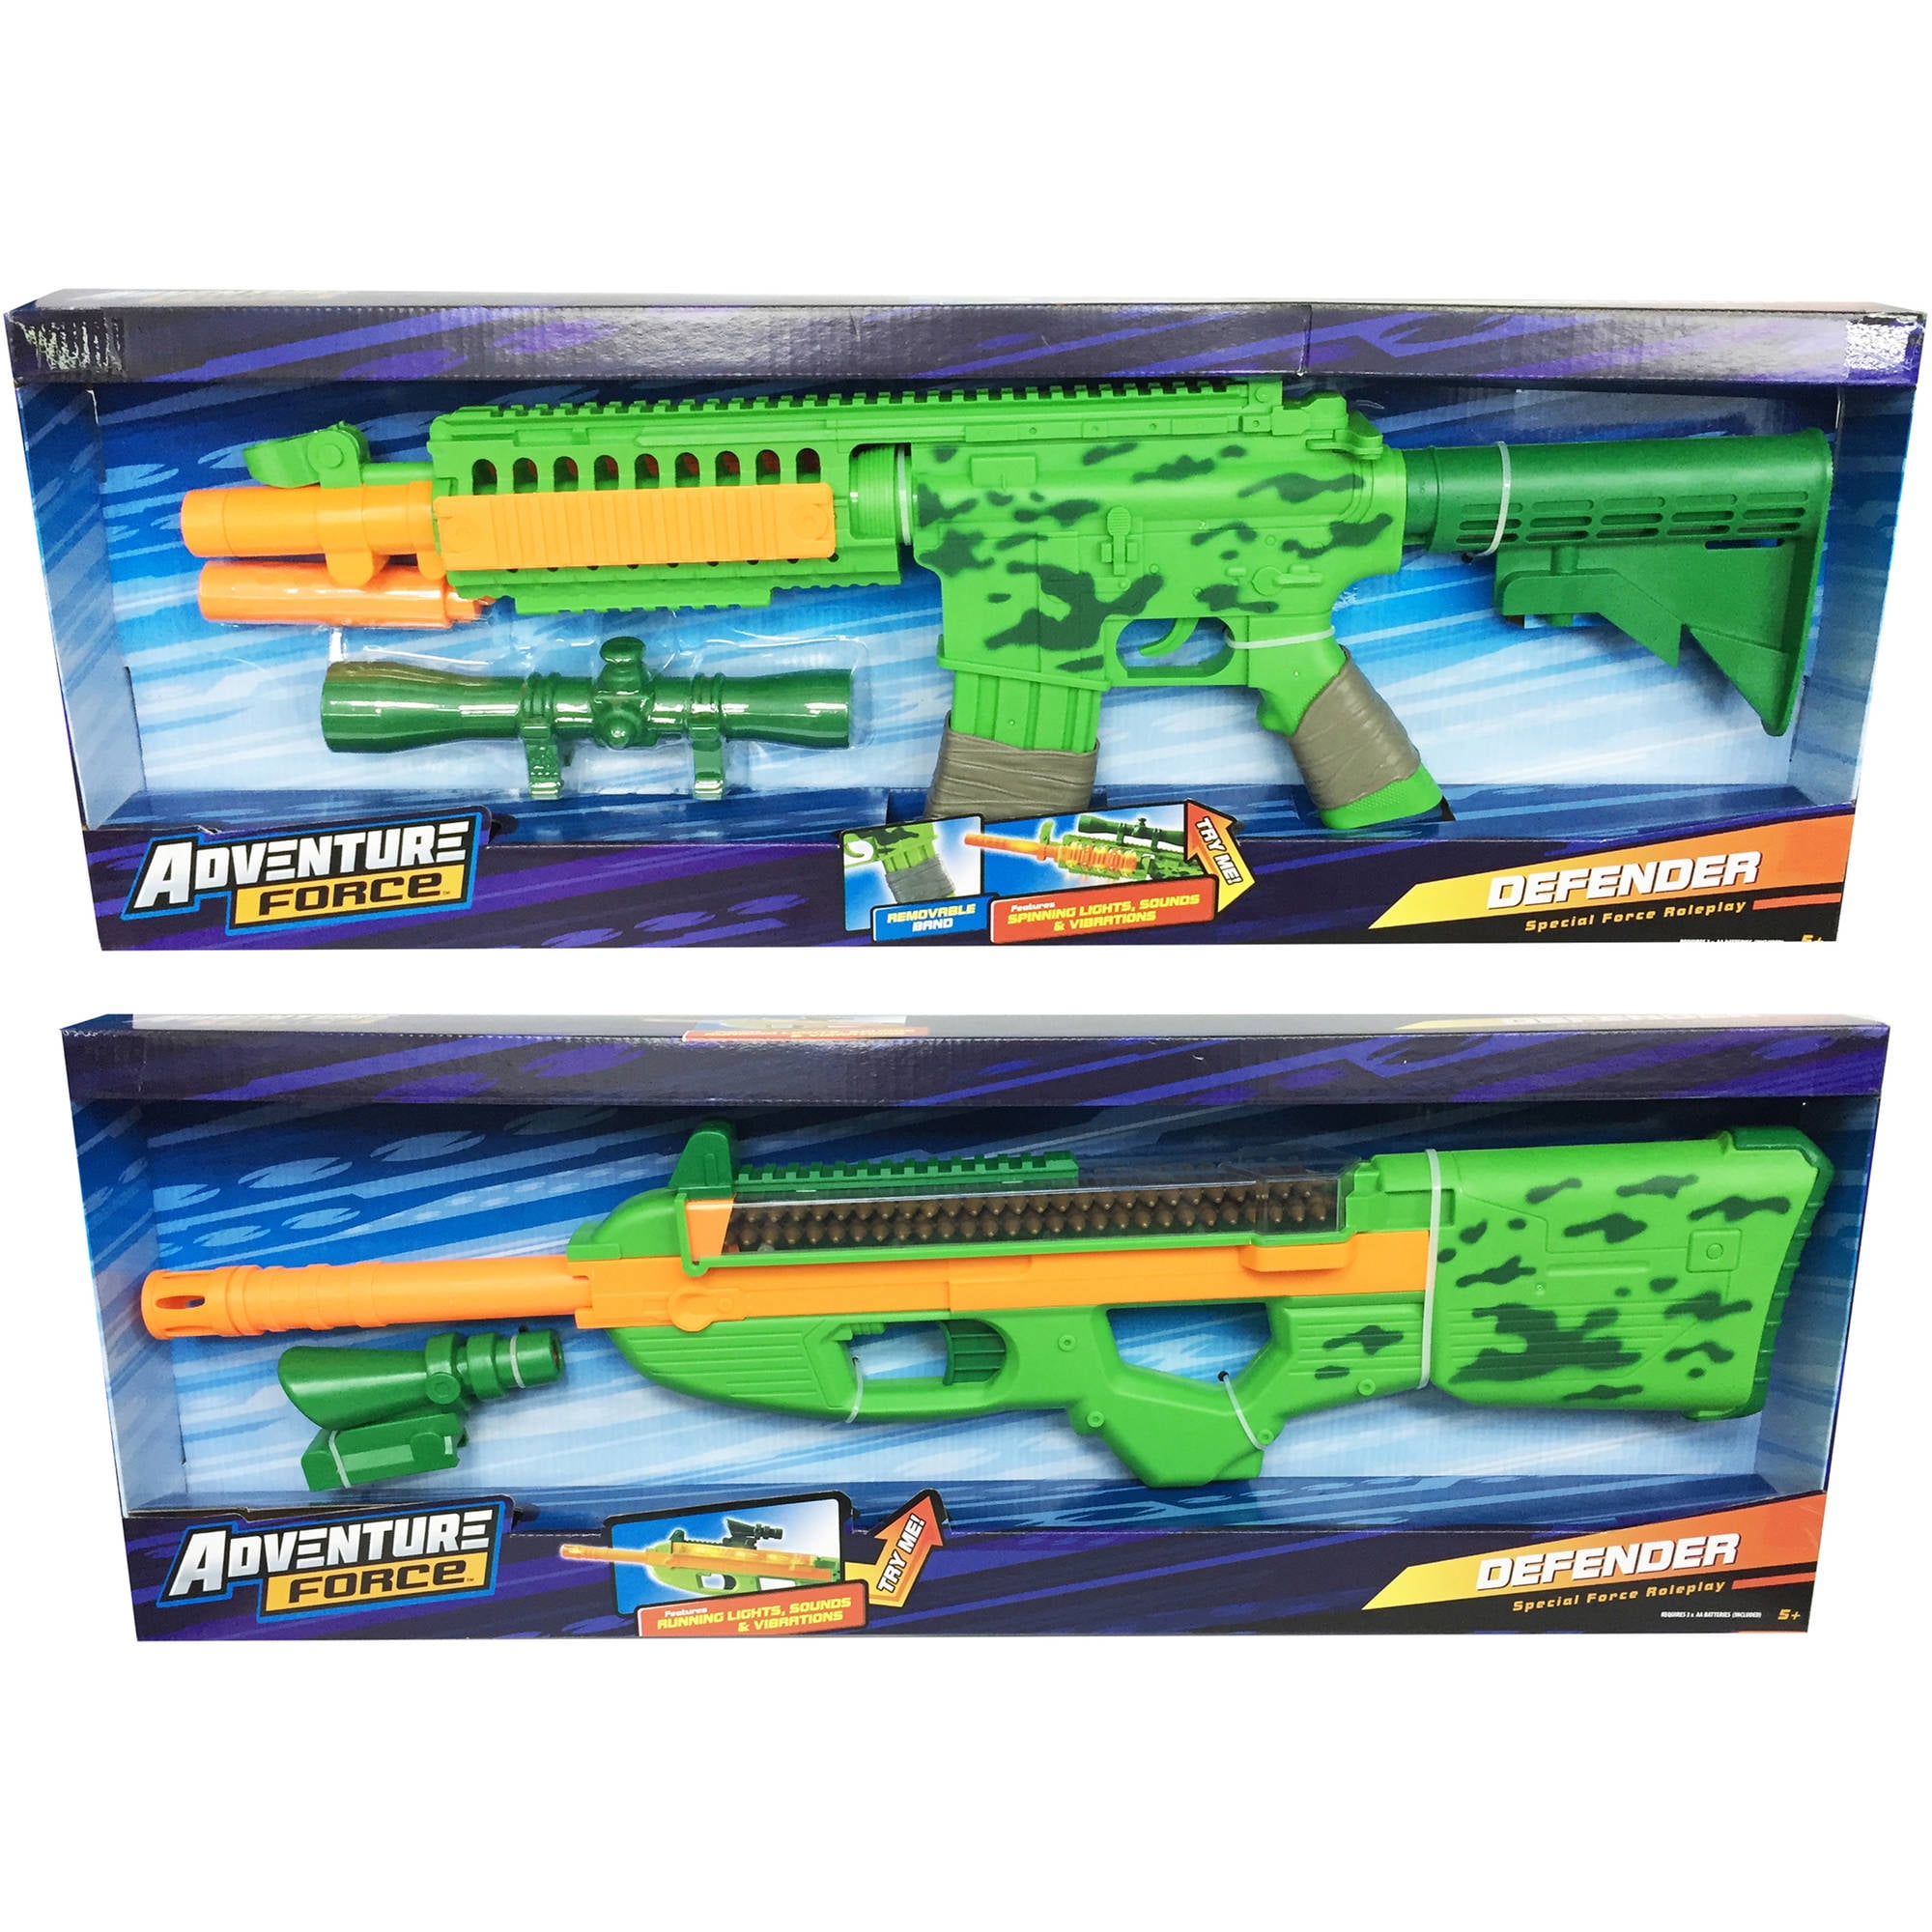 Defender Deluxe Toy Rifle - Walmart.com 